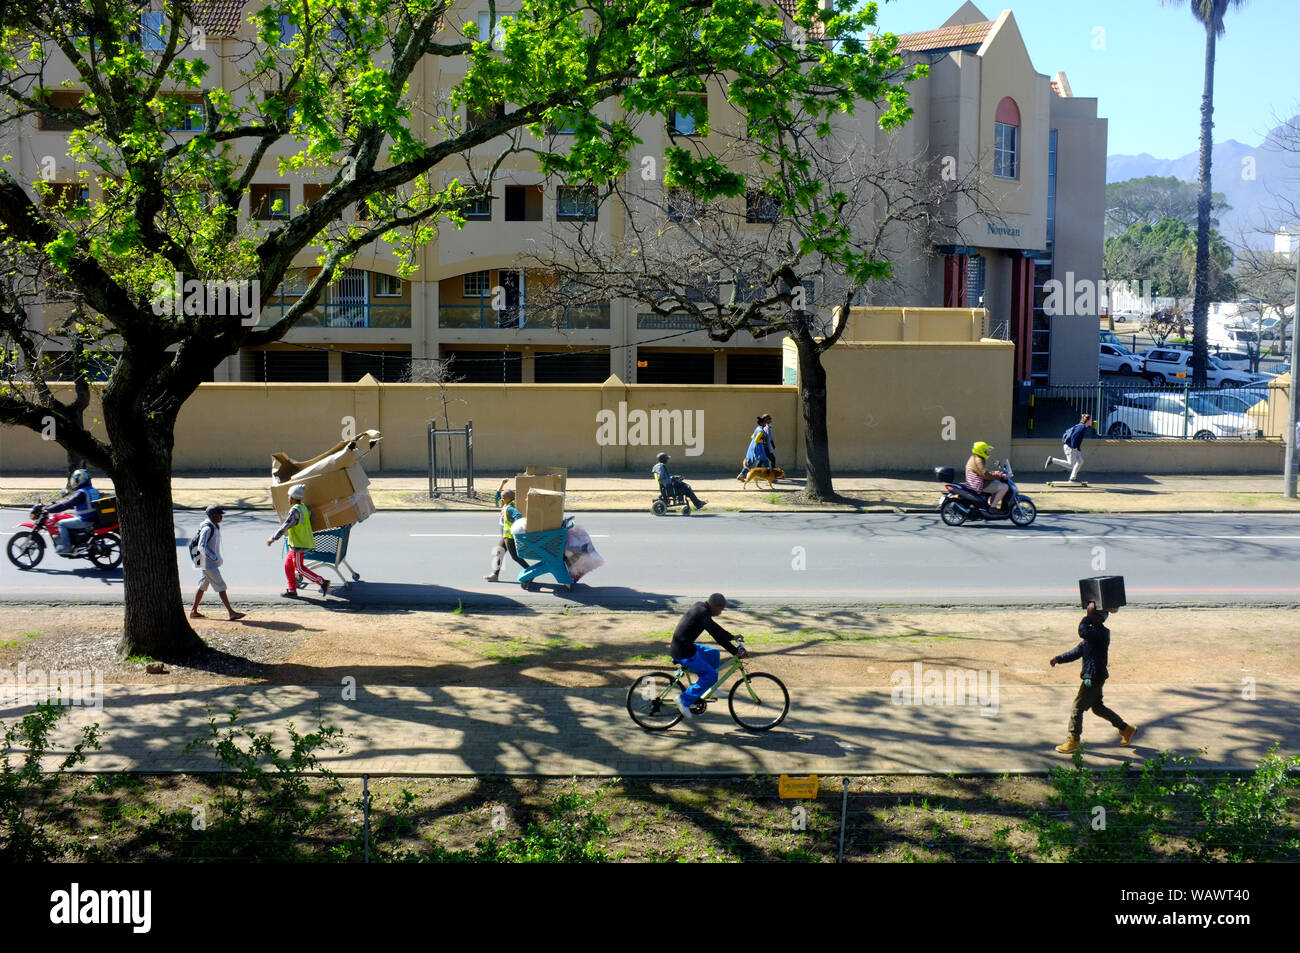 Una escena callejera en la sudafricana universidad de la ciudad de Stellenbosch. Foto de stock